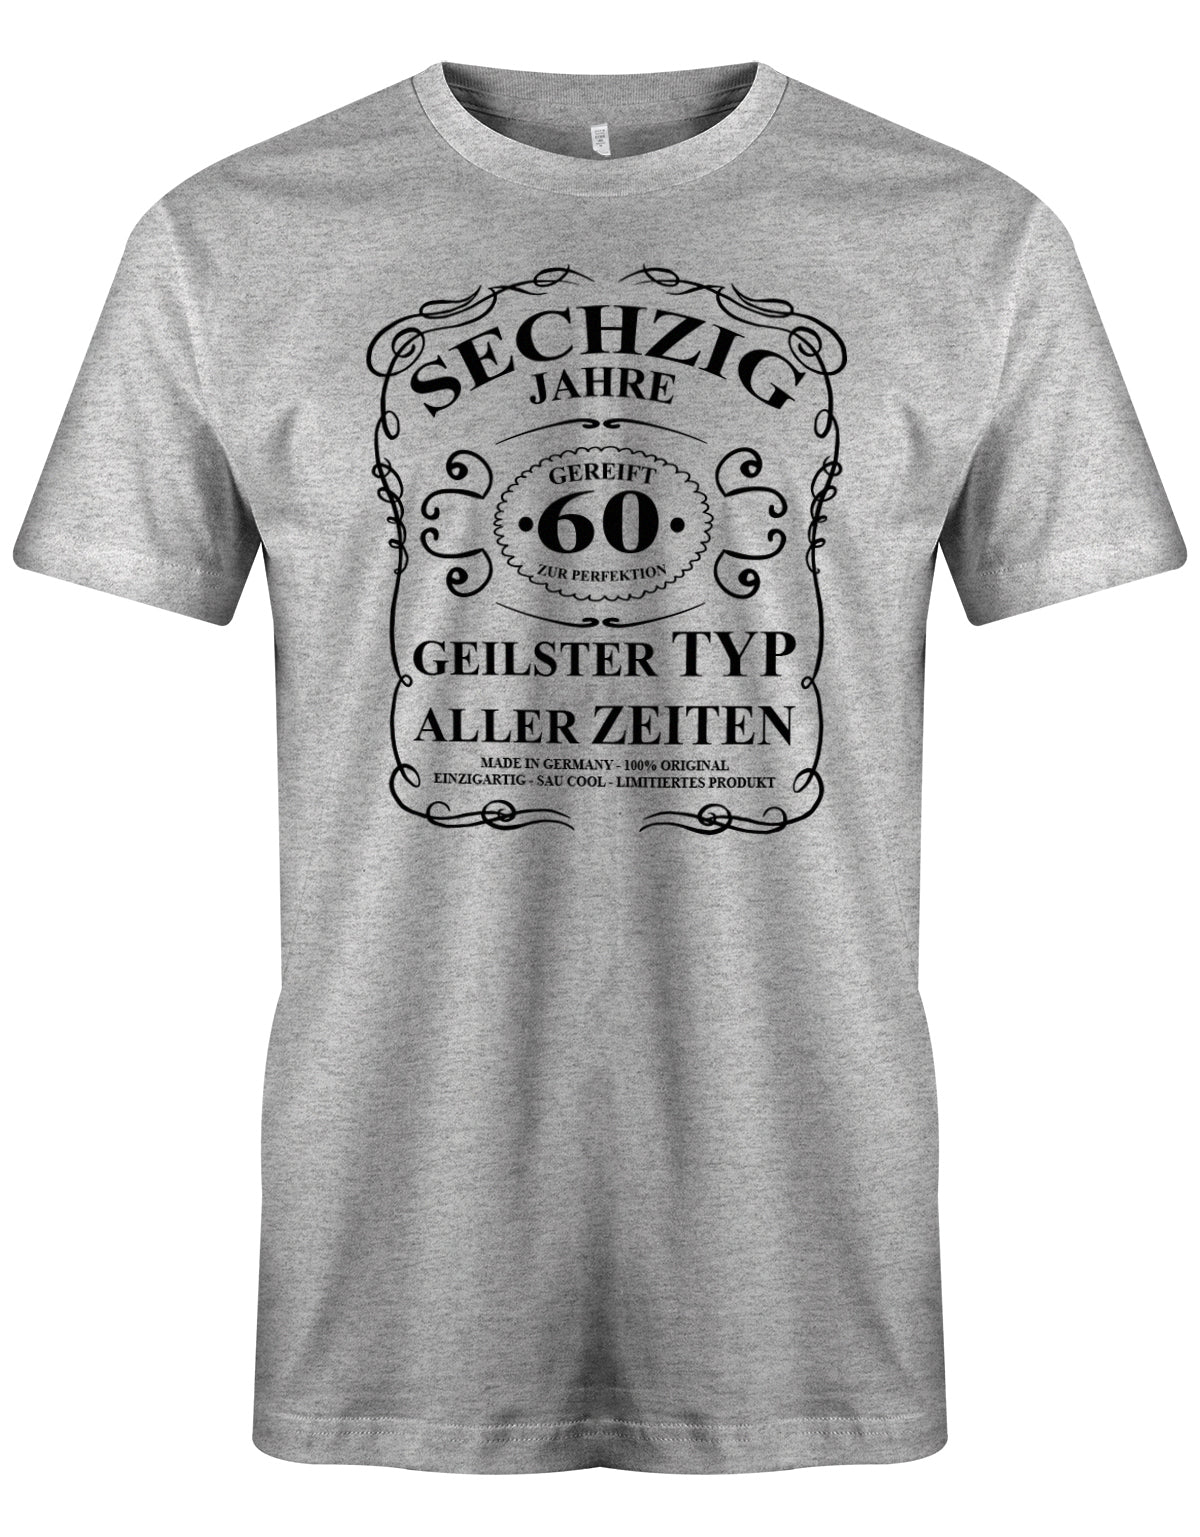 Lustiges T-Shirt zum 60. Geburtstag für den Mann Bedruckt mit fünfzig Jahre gereift zur Perfektion Geilster Typ aller Zeiten Made in Germany 100% Original Einzigartig Sau Cool Limitiertes Produkt. Grau